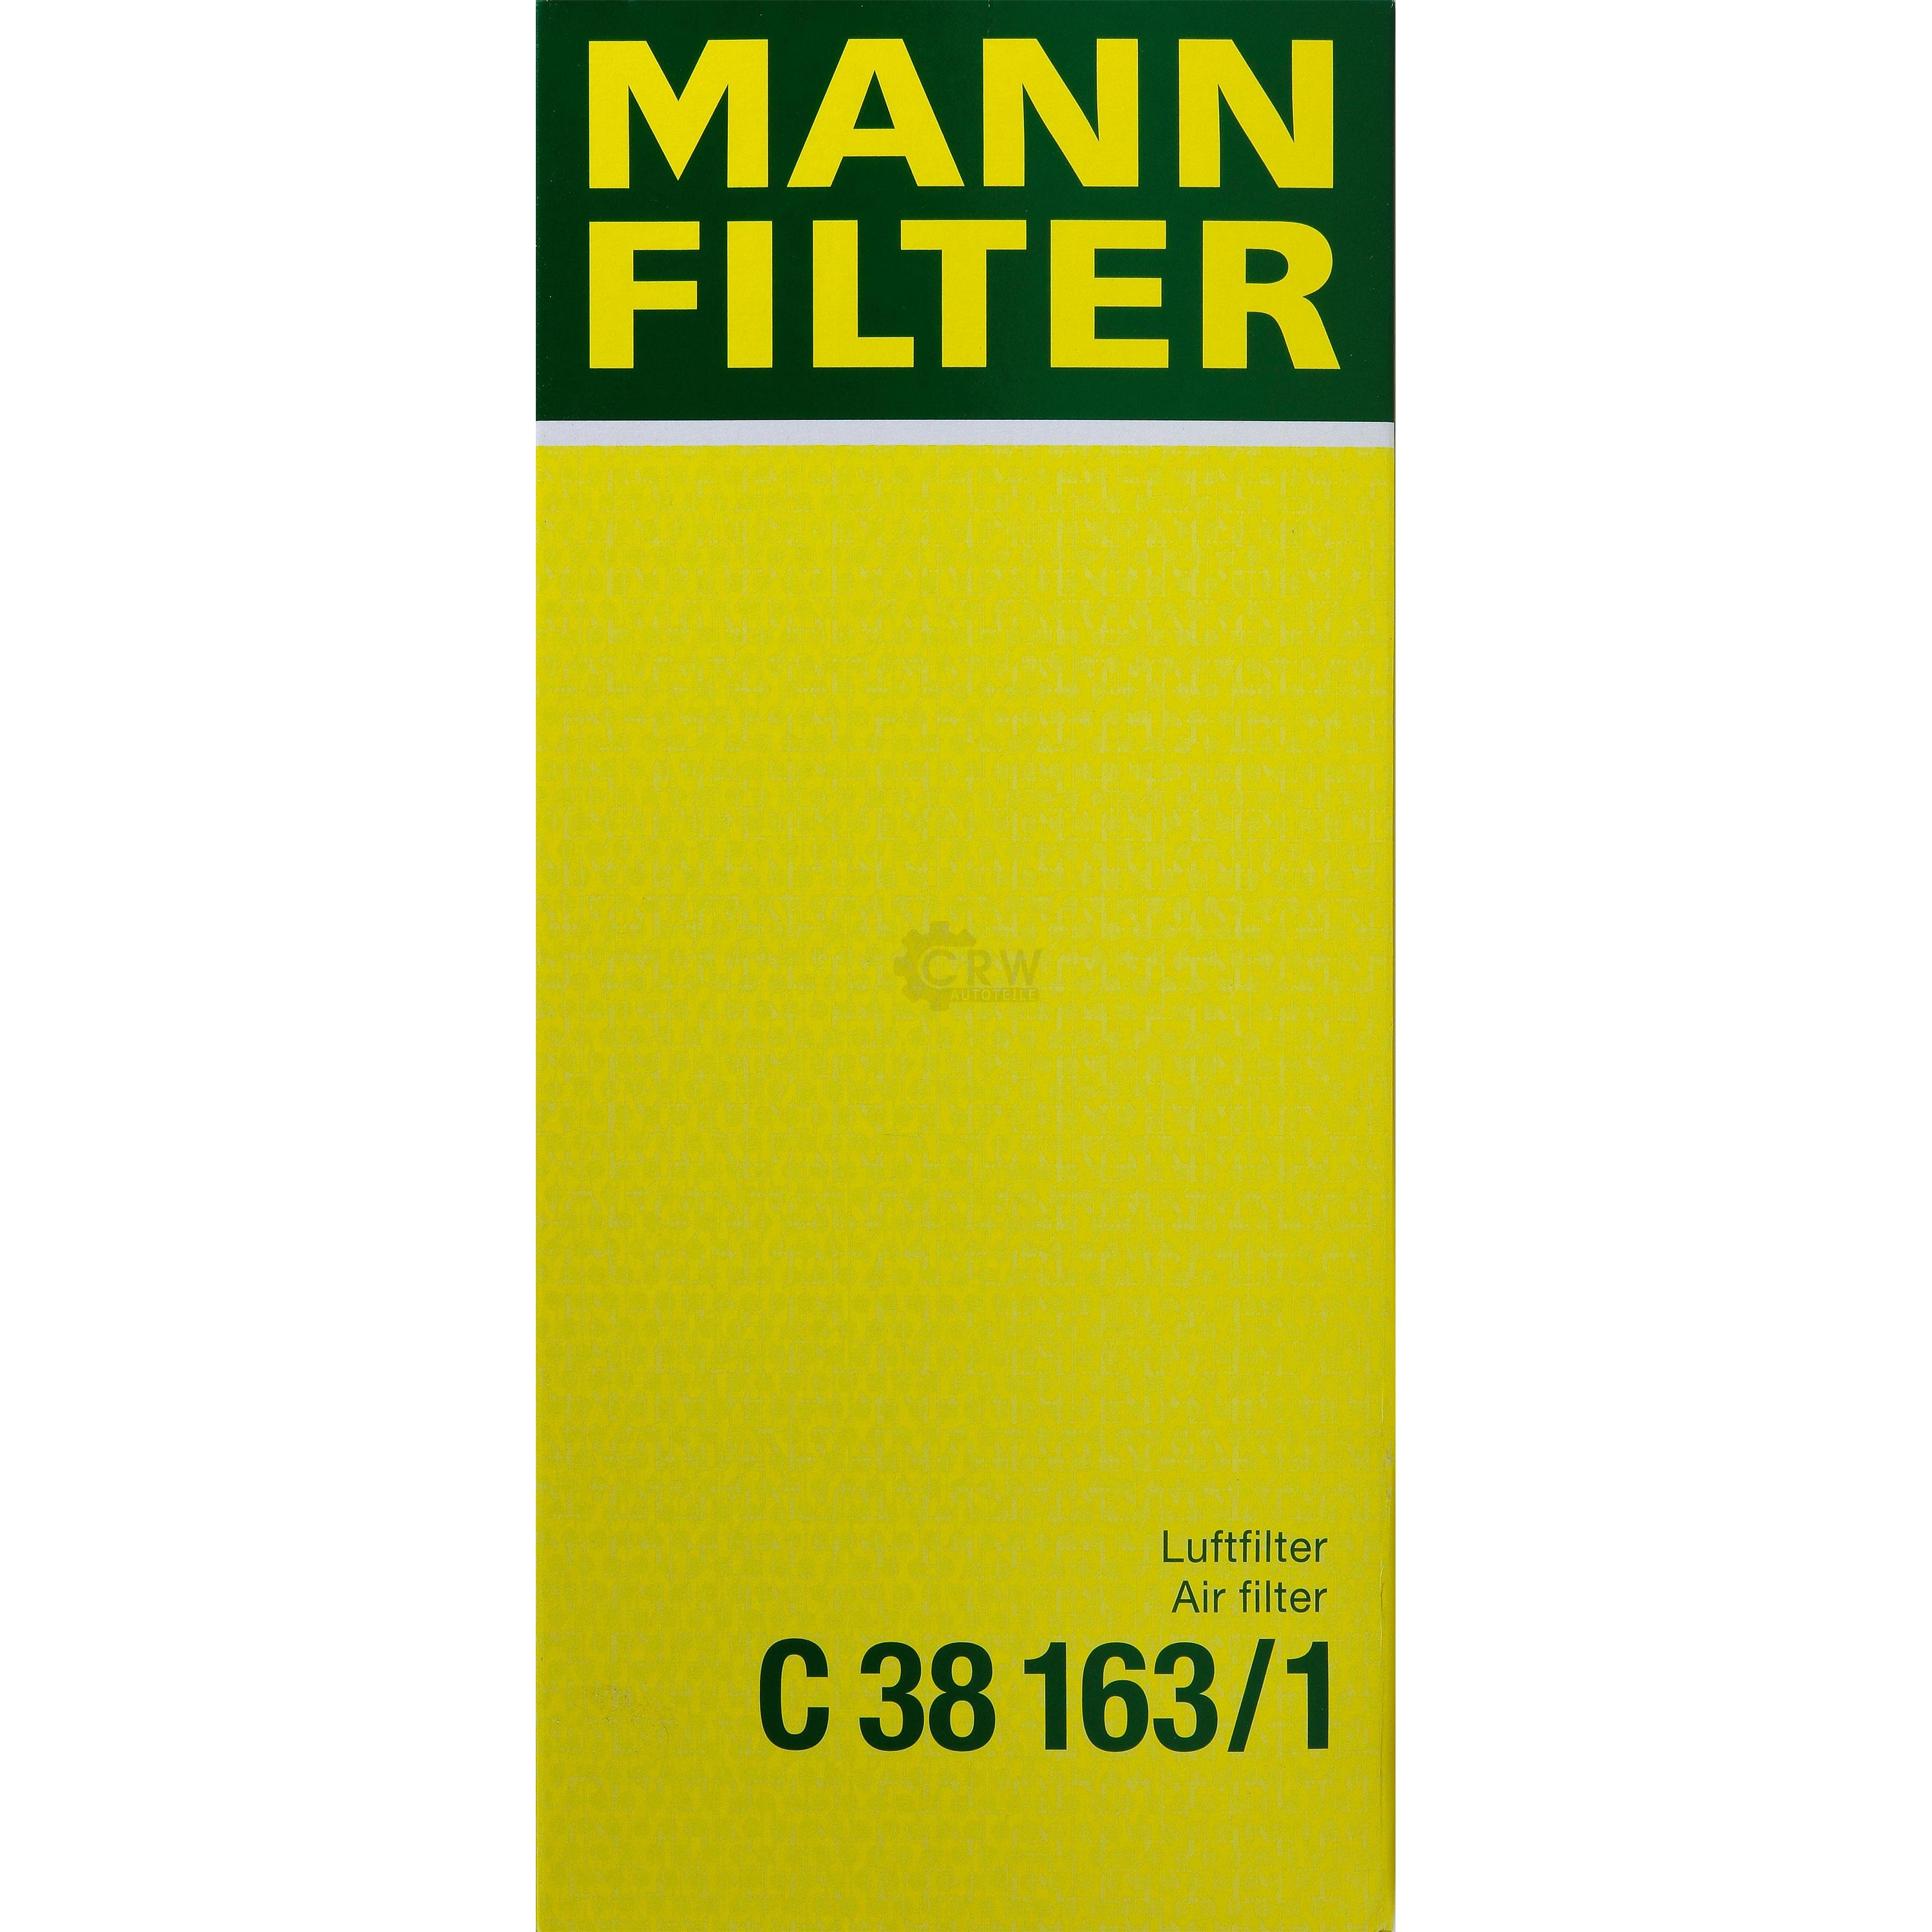 MANN-FILTER Luftfilter für Mercedes-Benz Saloon W124 250 D 190 W201 S124